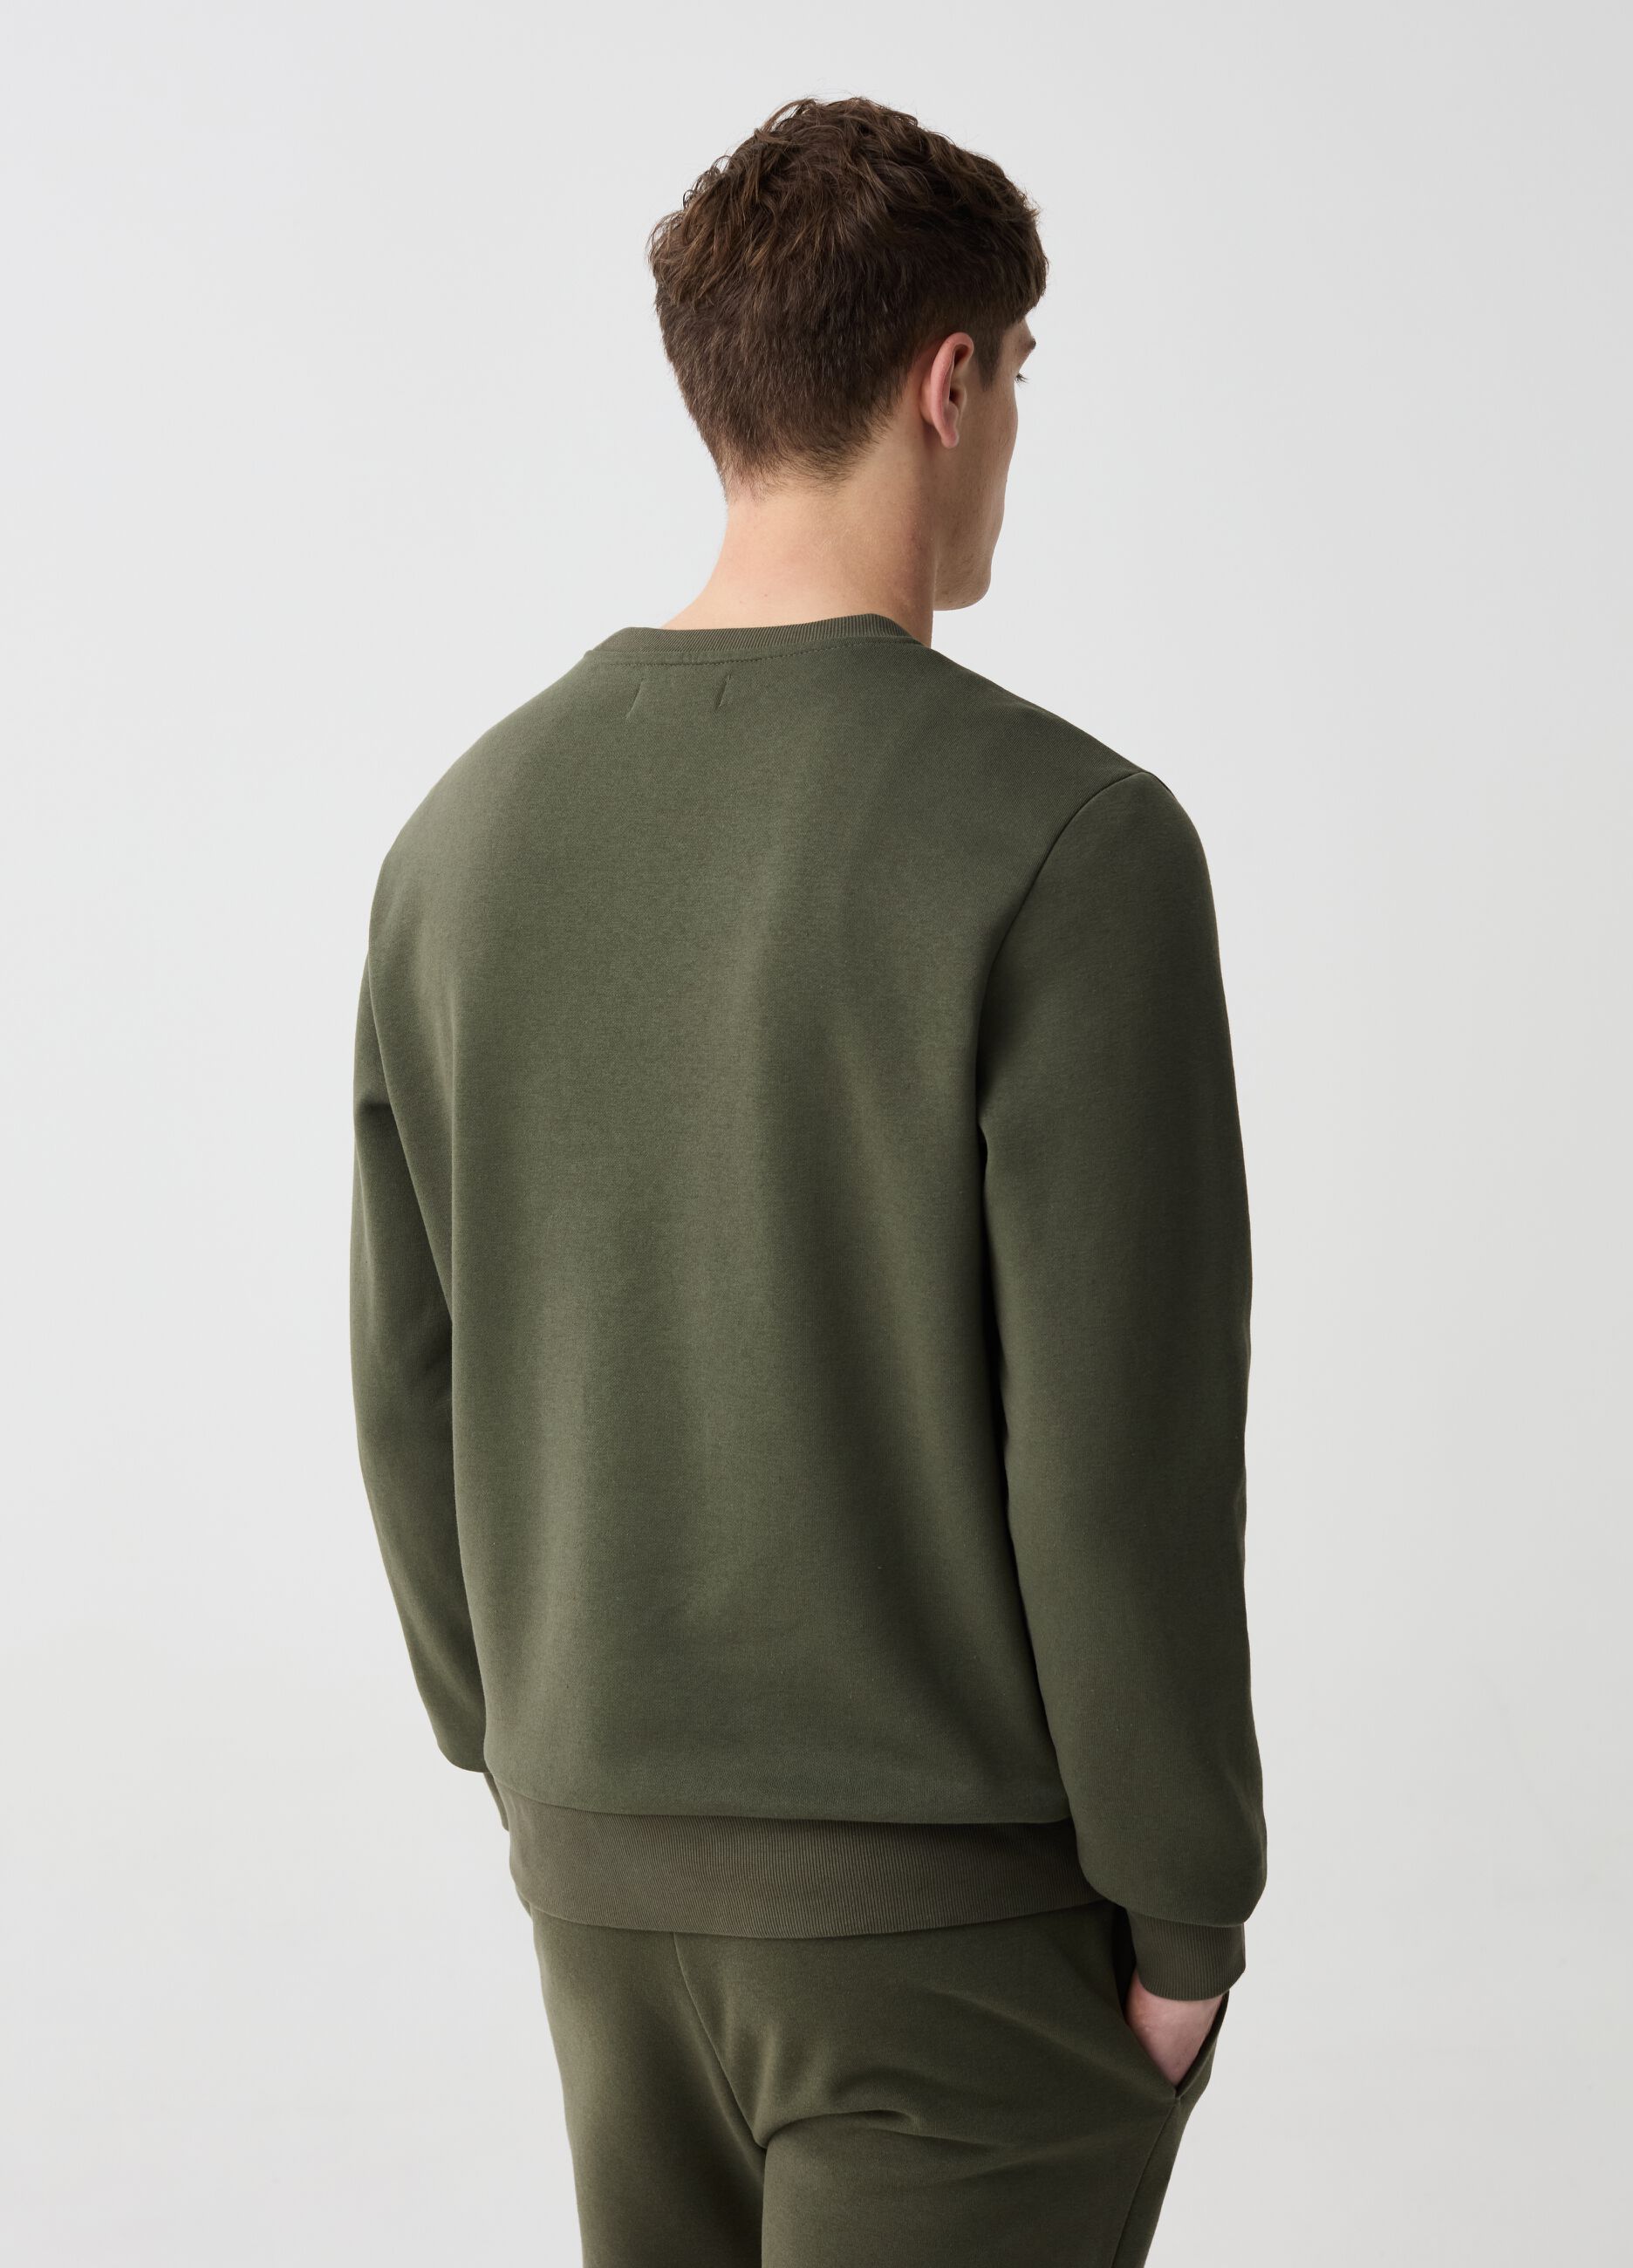 Sweatshirt with round neck